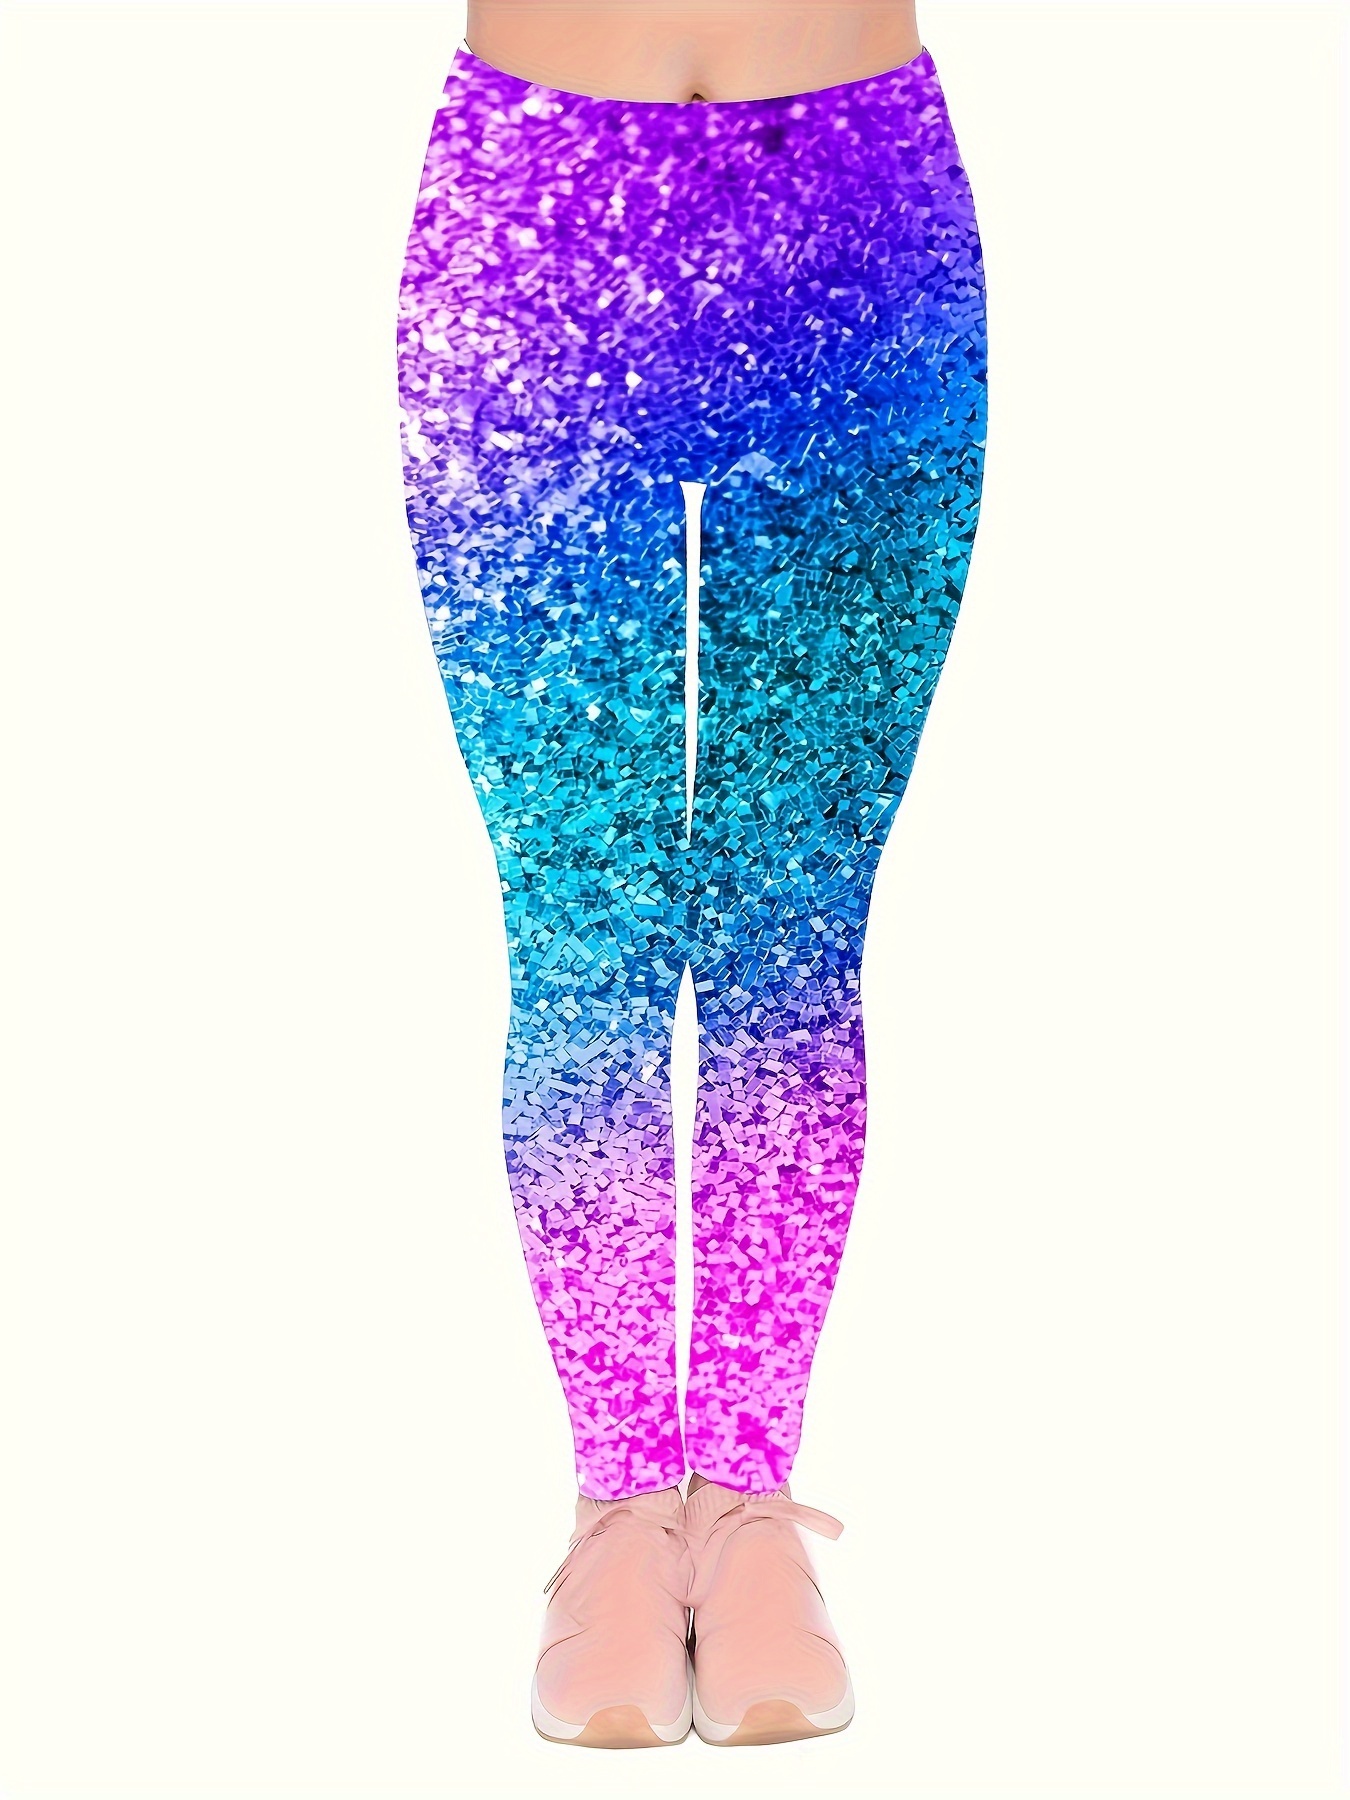 Leggings Glitter Bling Shiny Leg Sequin Women Leggings Workout High Waist  Exercise Fitness Stretch Yoga Pants